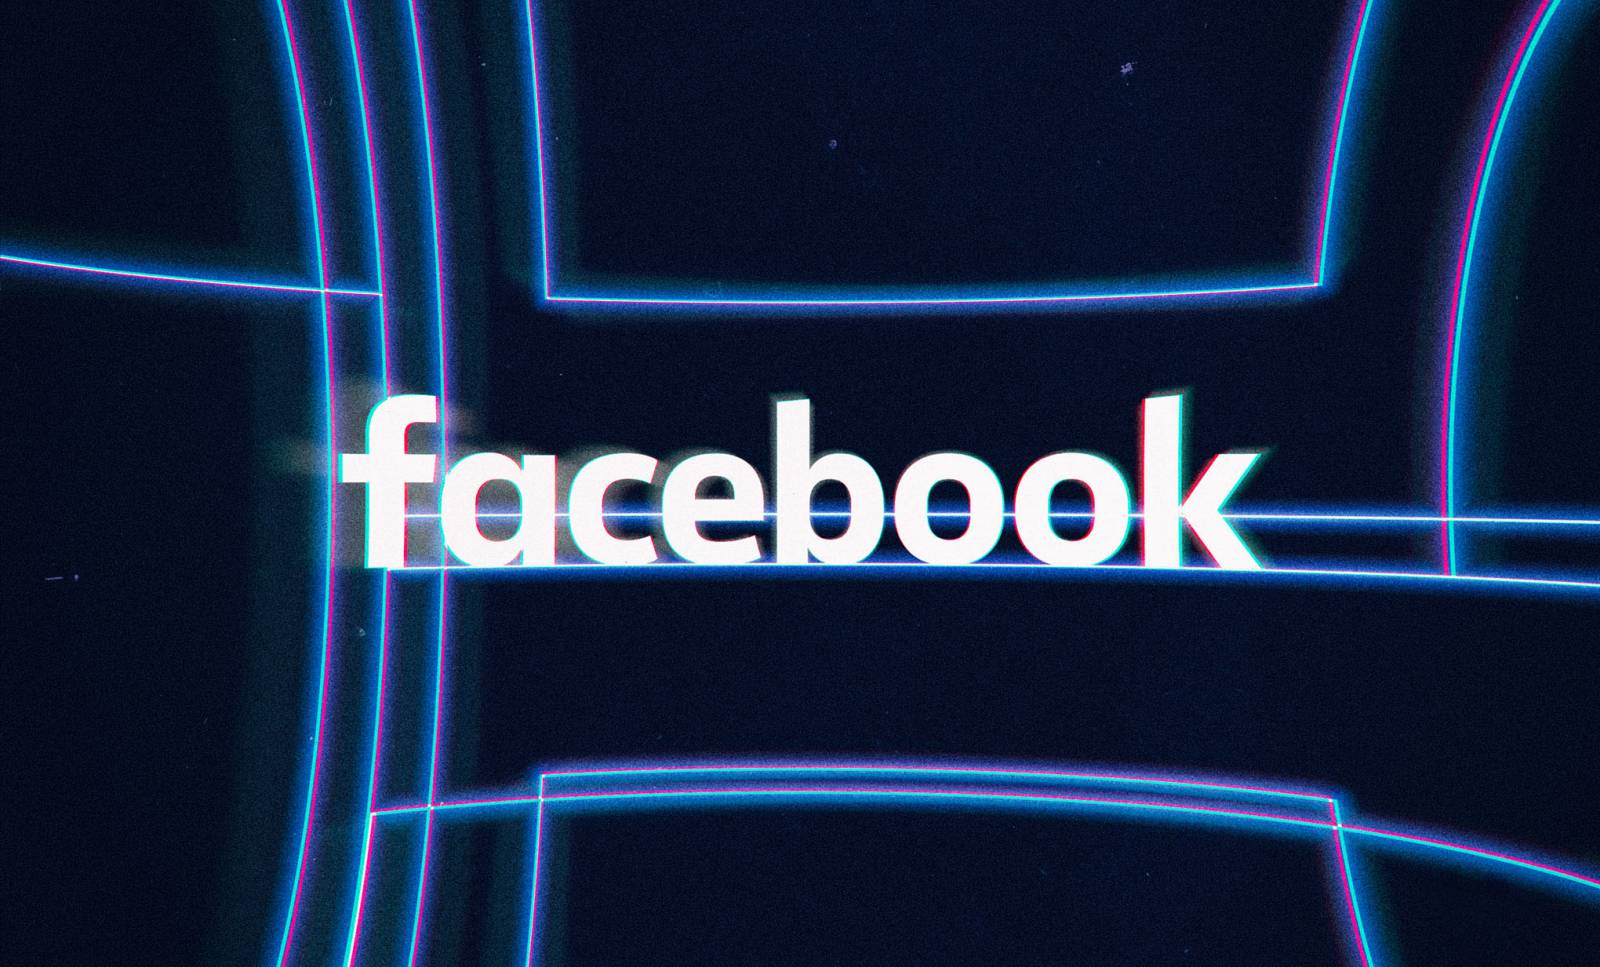 Facebook. 419 MILJOEN telefoonnummers van mensen gepubliceerd